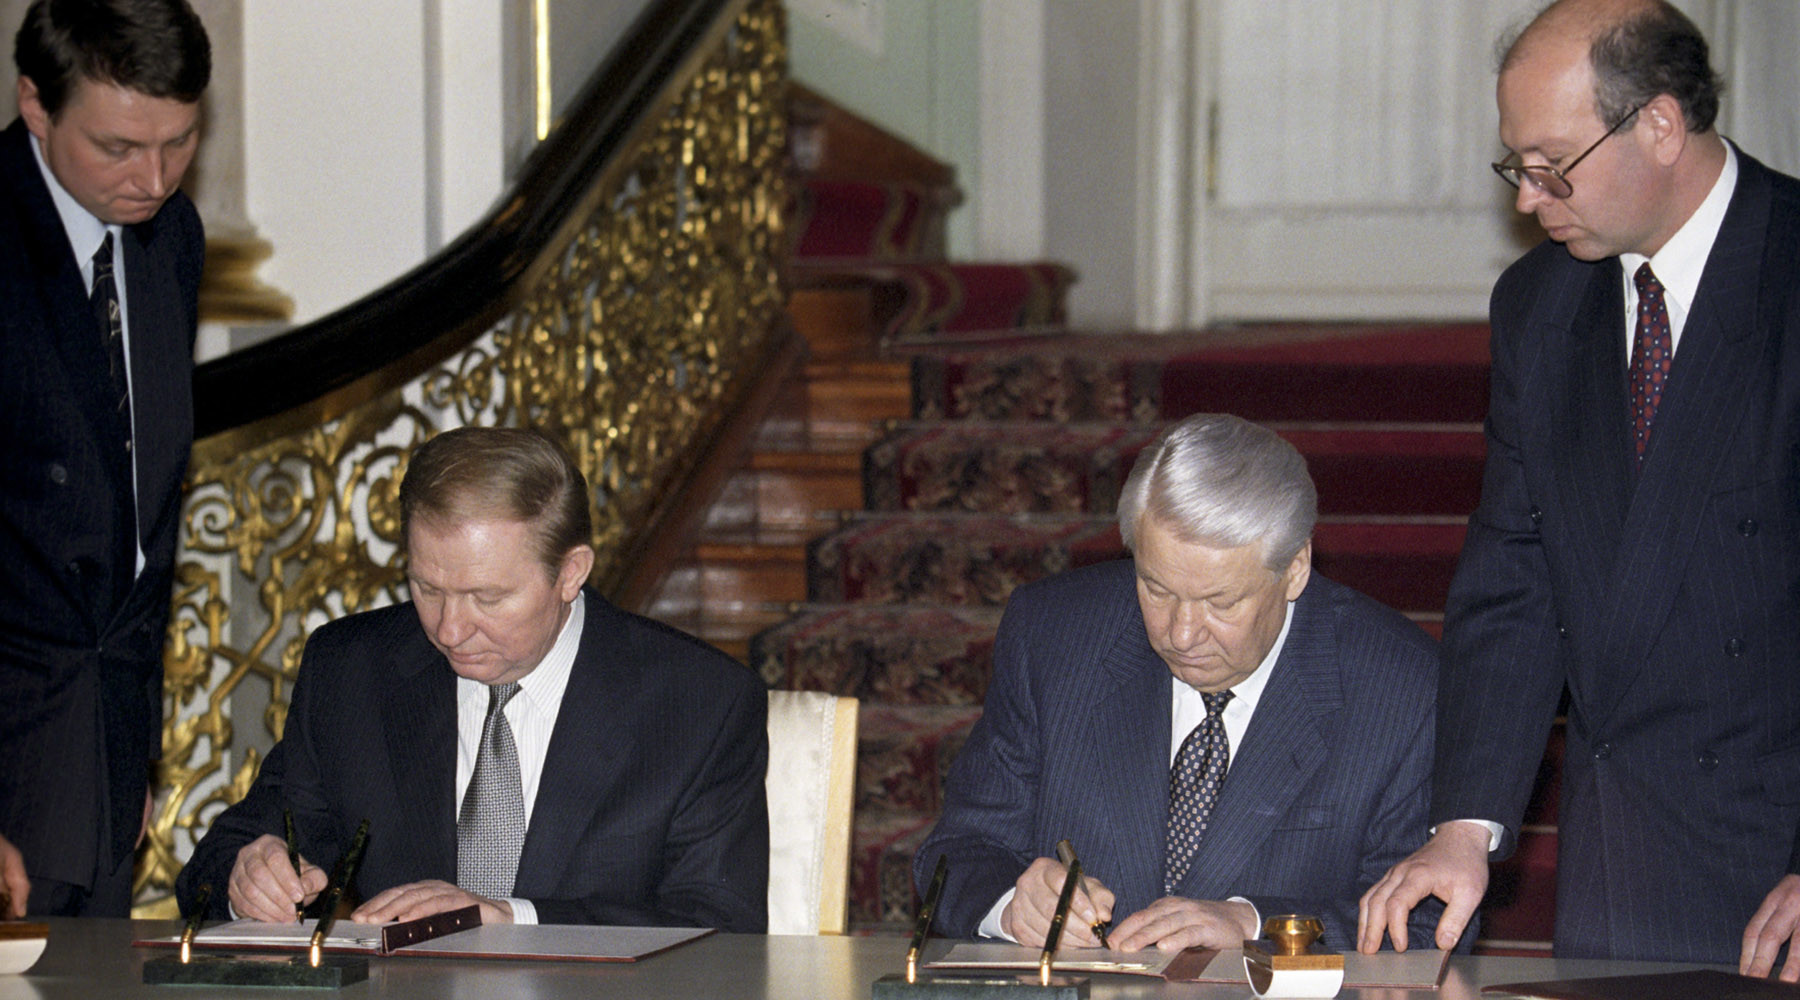 Договор о границах между россией и украиной. Ельцин и Кучма 1997.